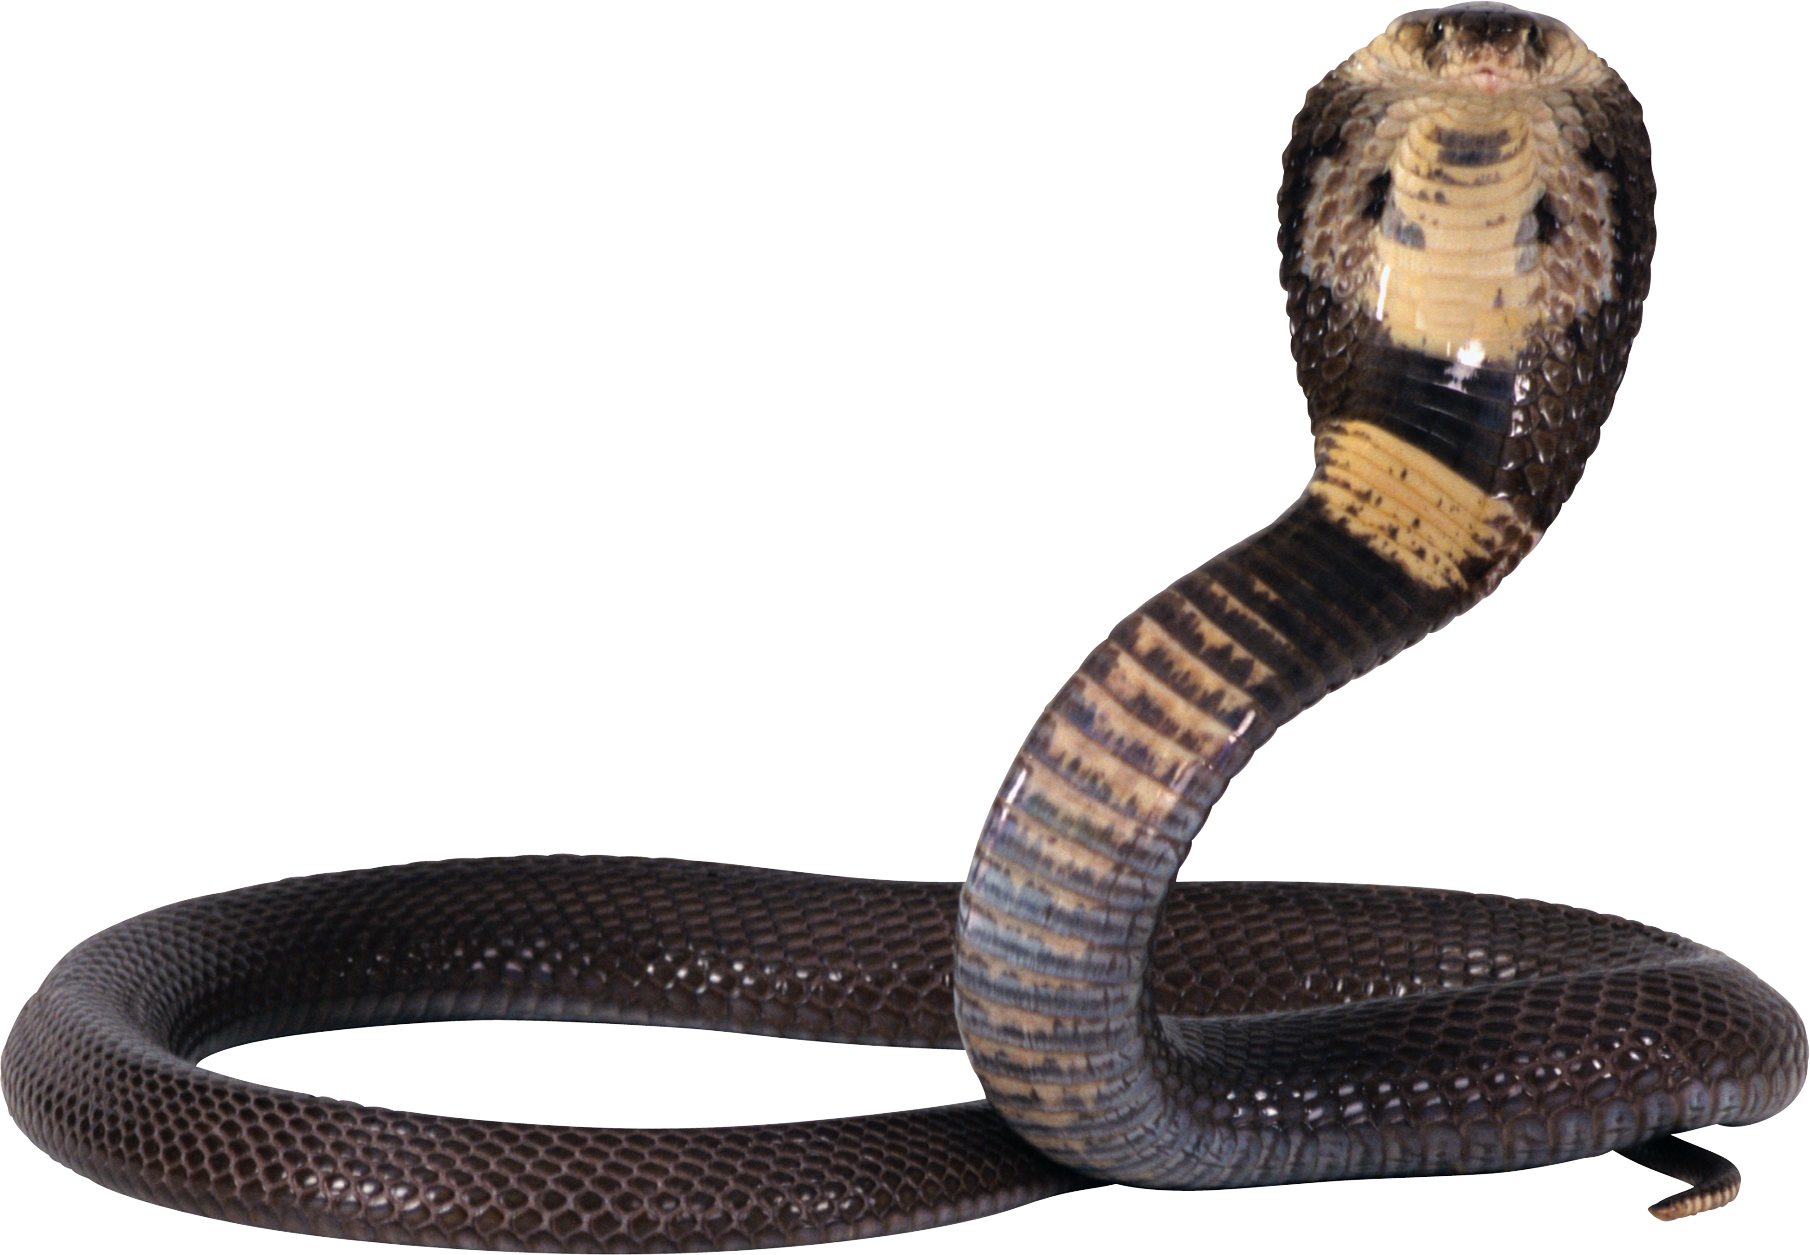 Black Mamba Snake PNG Background Image